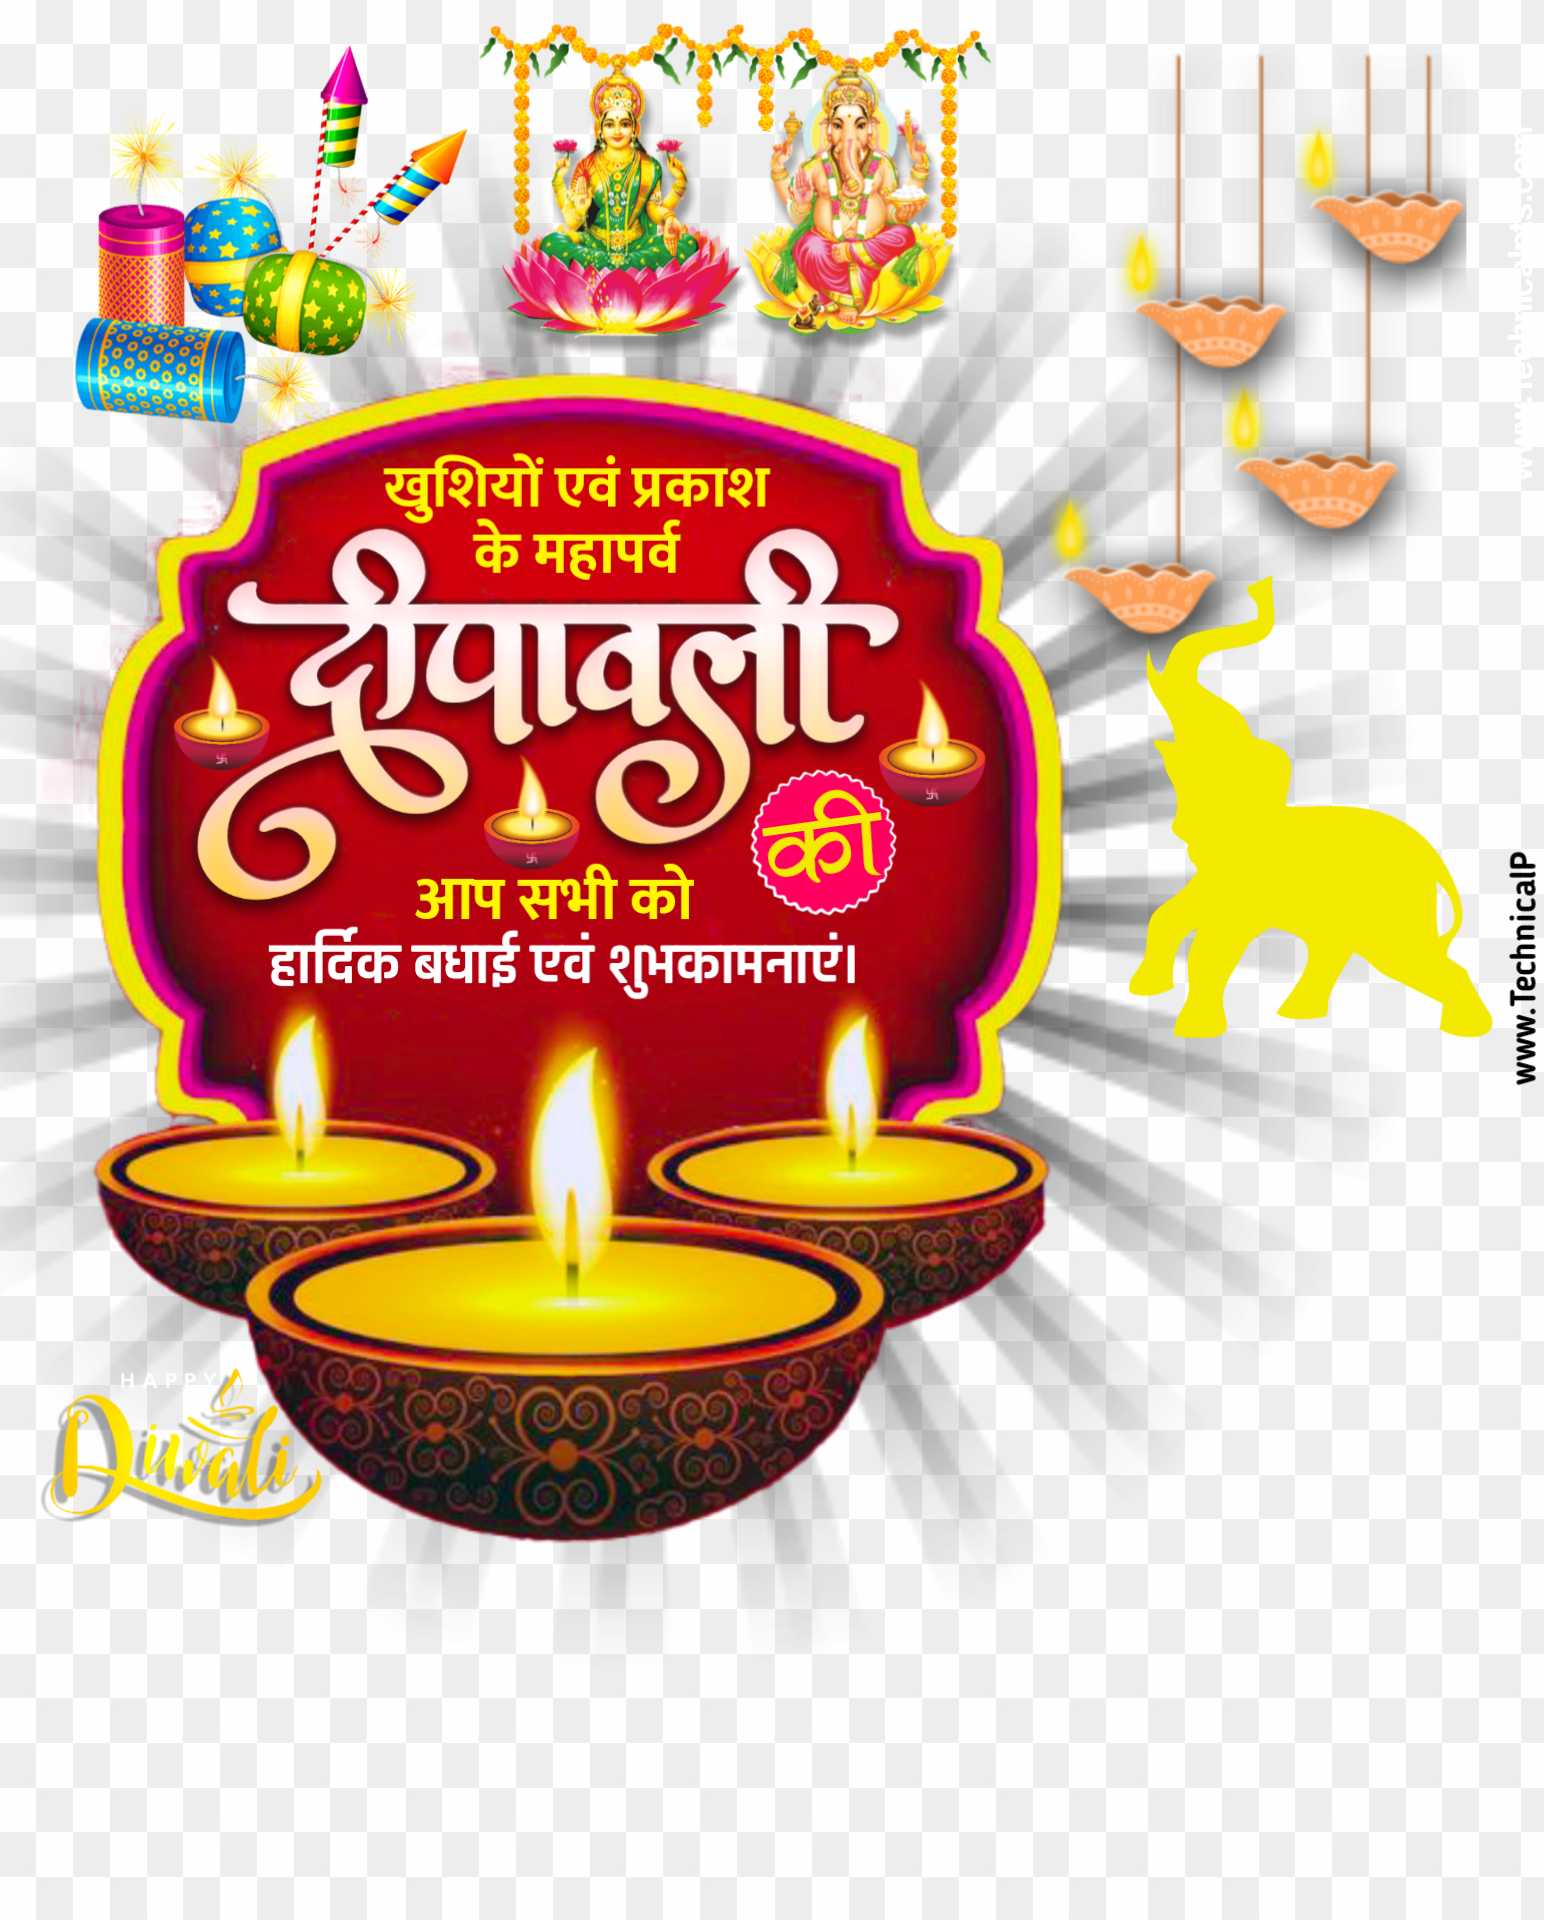 Hình ảnh trong suốt của biểu ngữ Diwali sẽ khiến bạn bừng sáng và đầy phấn khích. Dùng hình ảnh này để tạo không khí ấm áp và rực rỡ cho ngôi nhà hoặc cửa hàng của bạn trong dịp lễ Dipawali. 